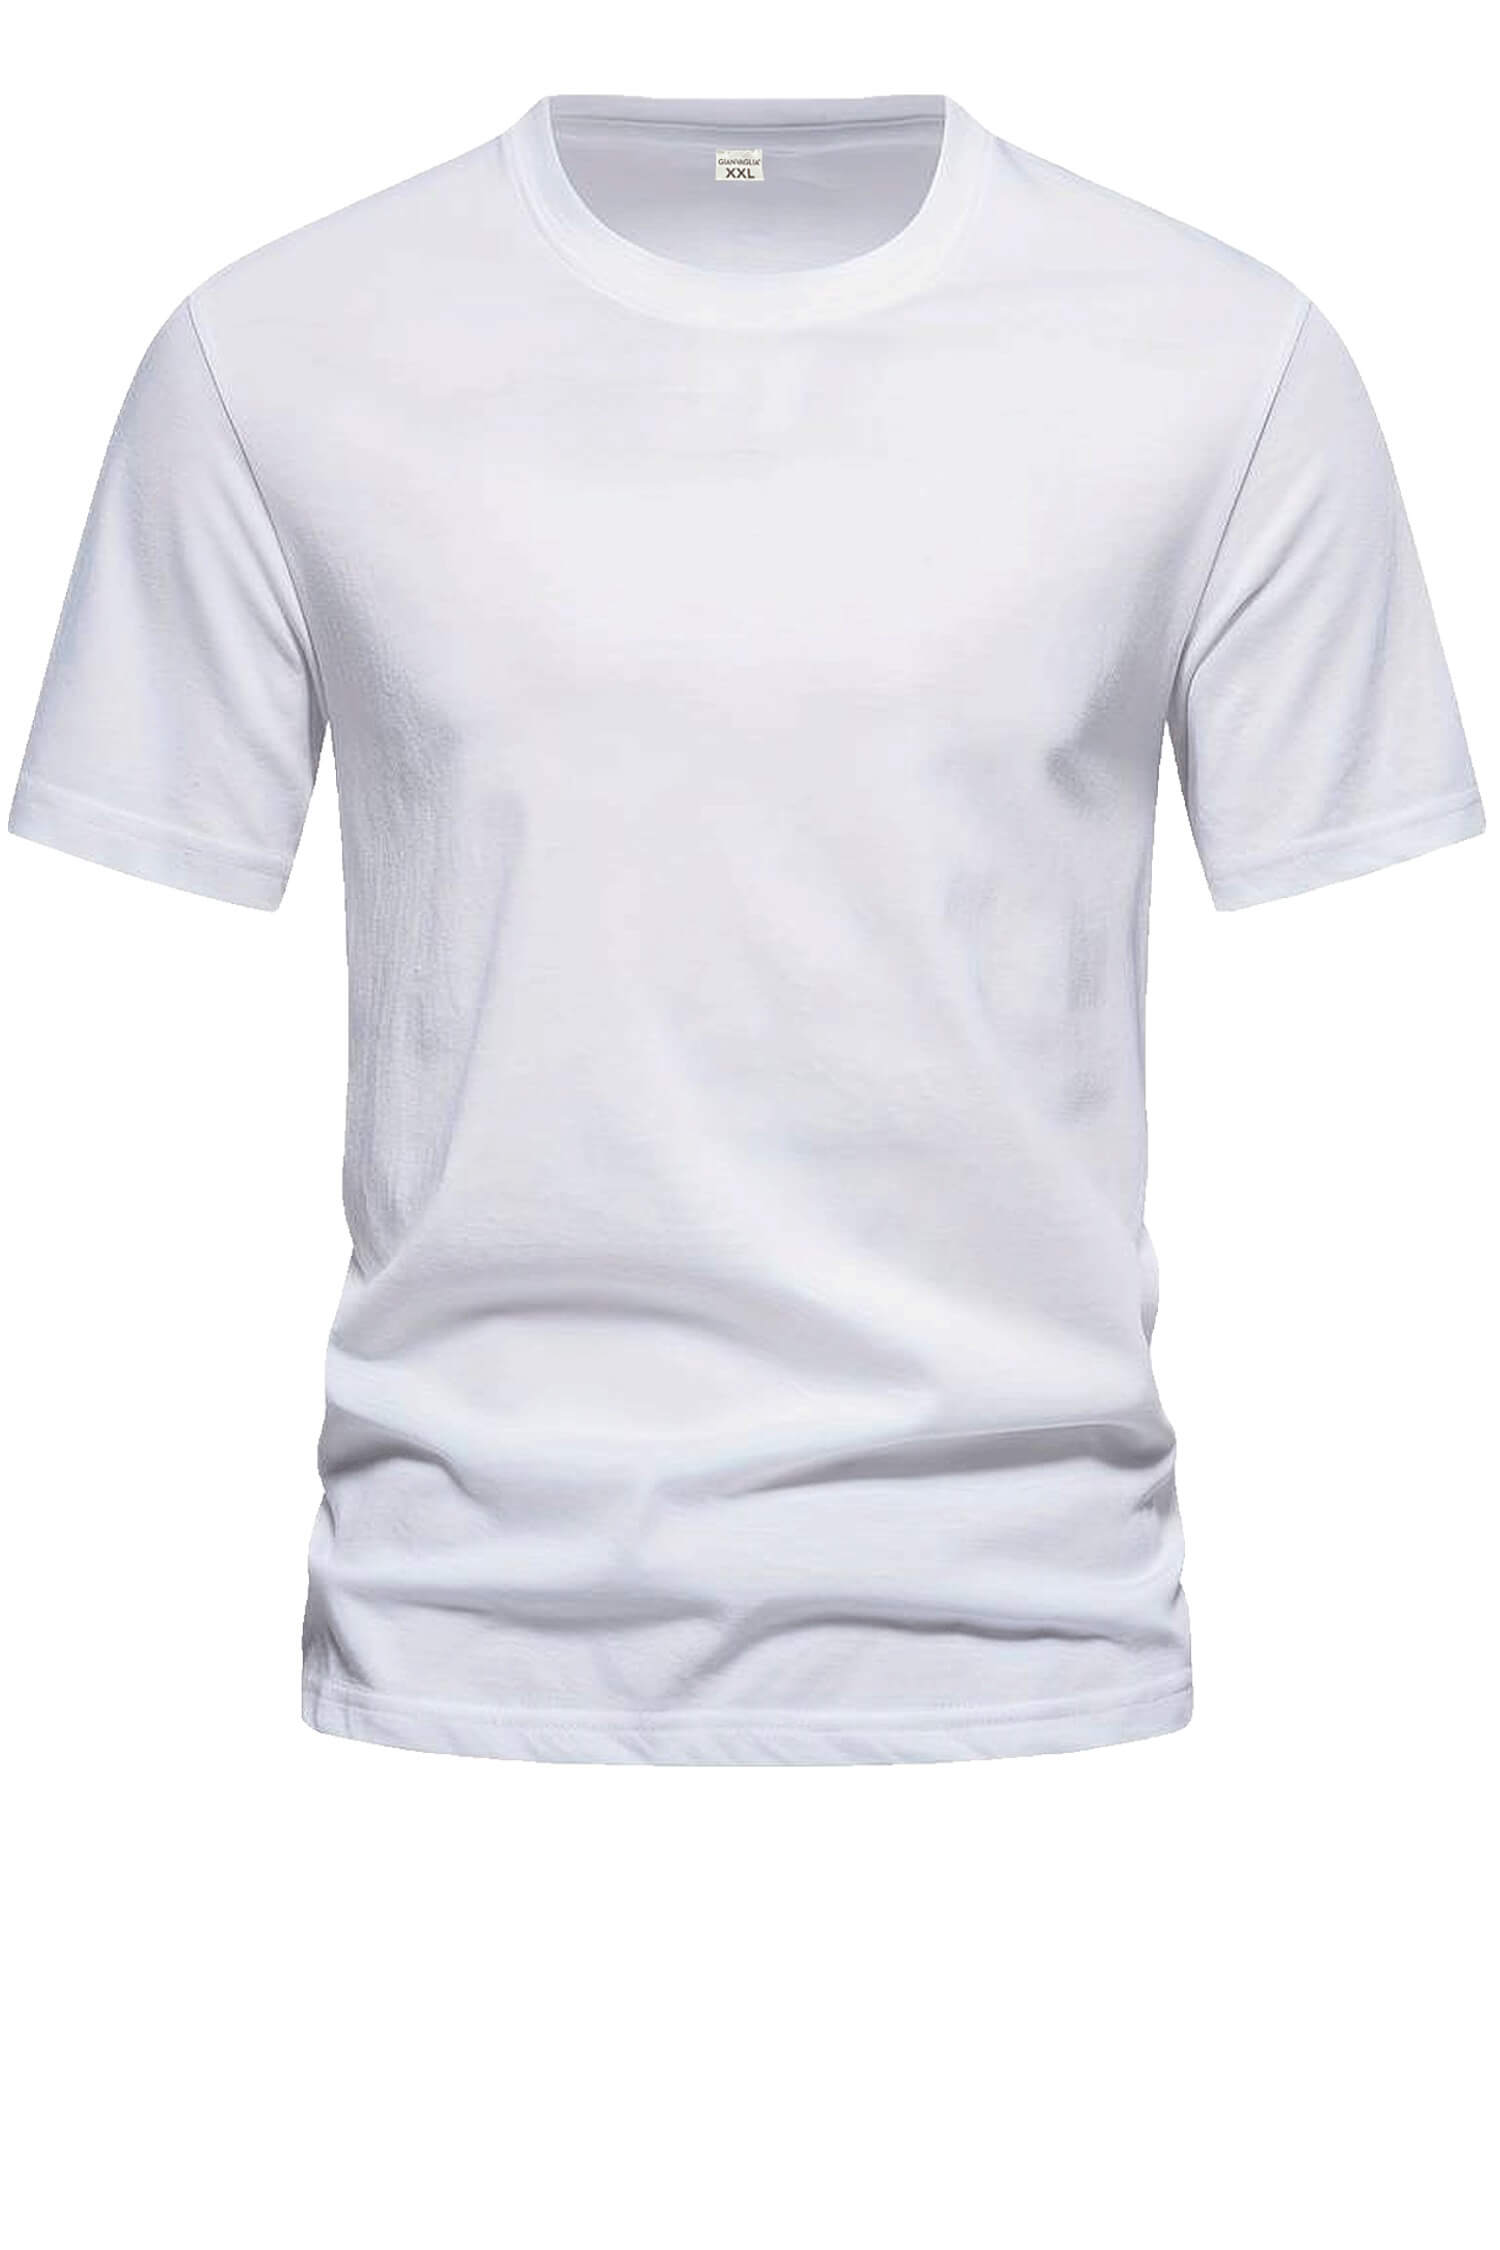 Bořek pánské klasické tričko TS-1006 bílá L